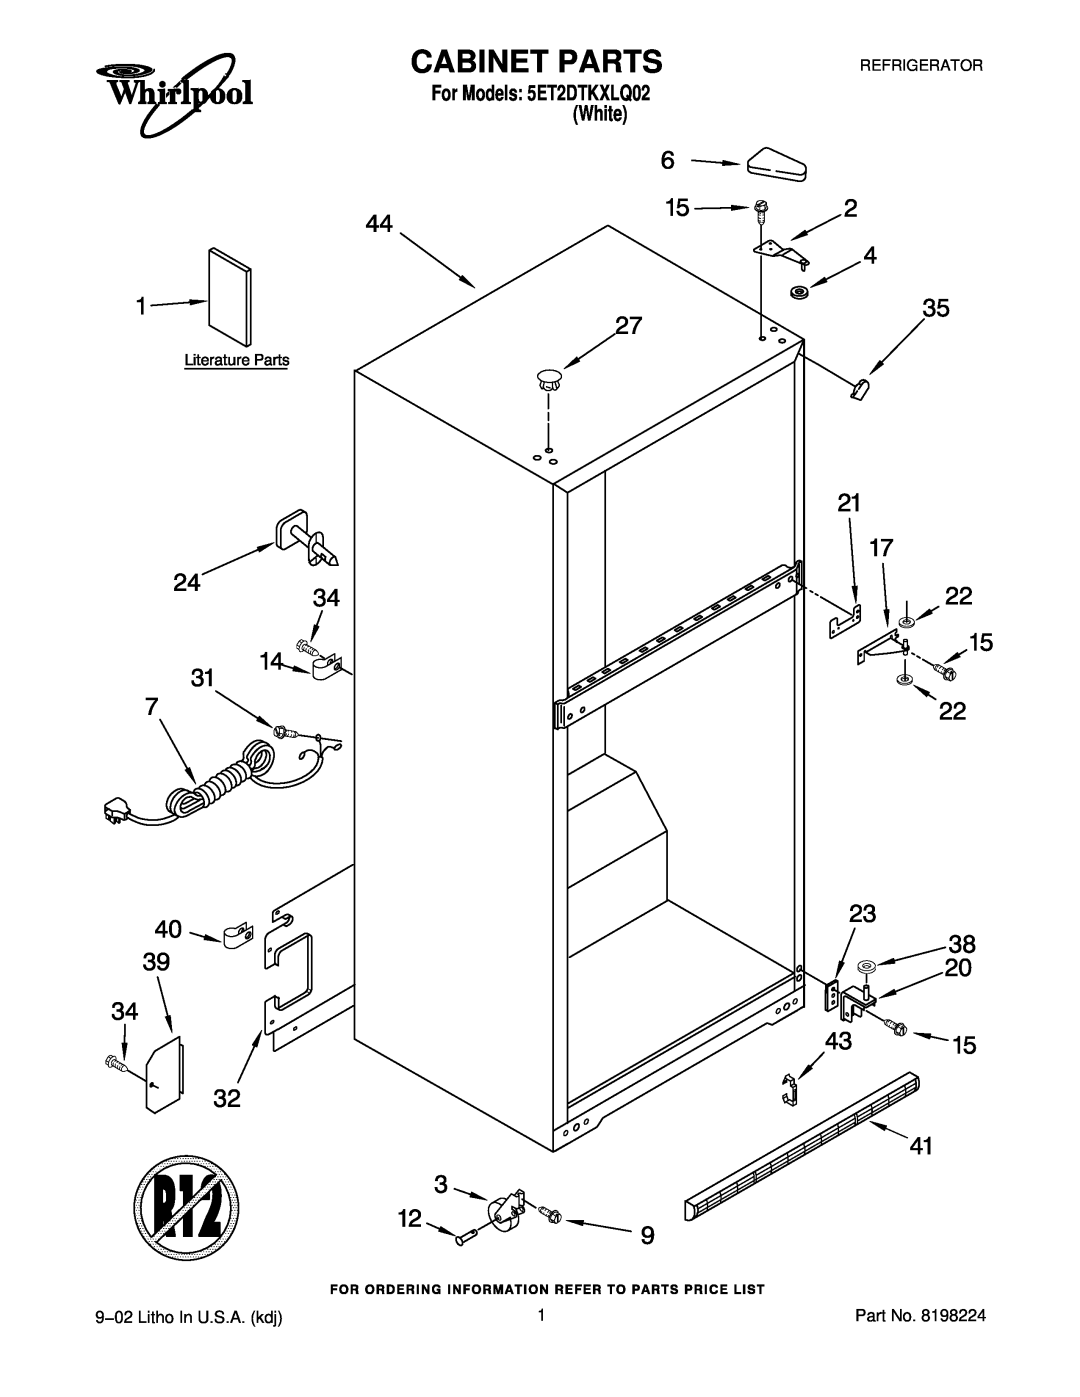 Whirlpool manual Cabinet Parts, 9−02 Litho In U.S.A. kdj, For Models 5ET2DTKXLQ02 White, Refrigerator 